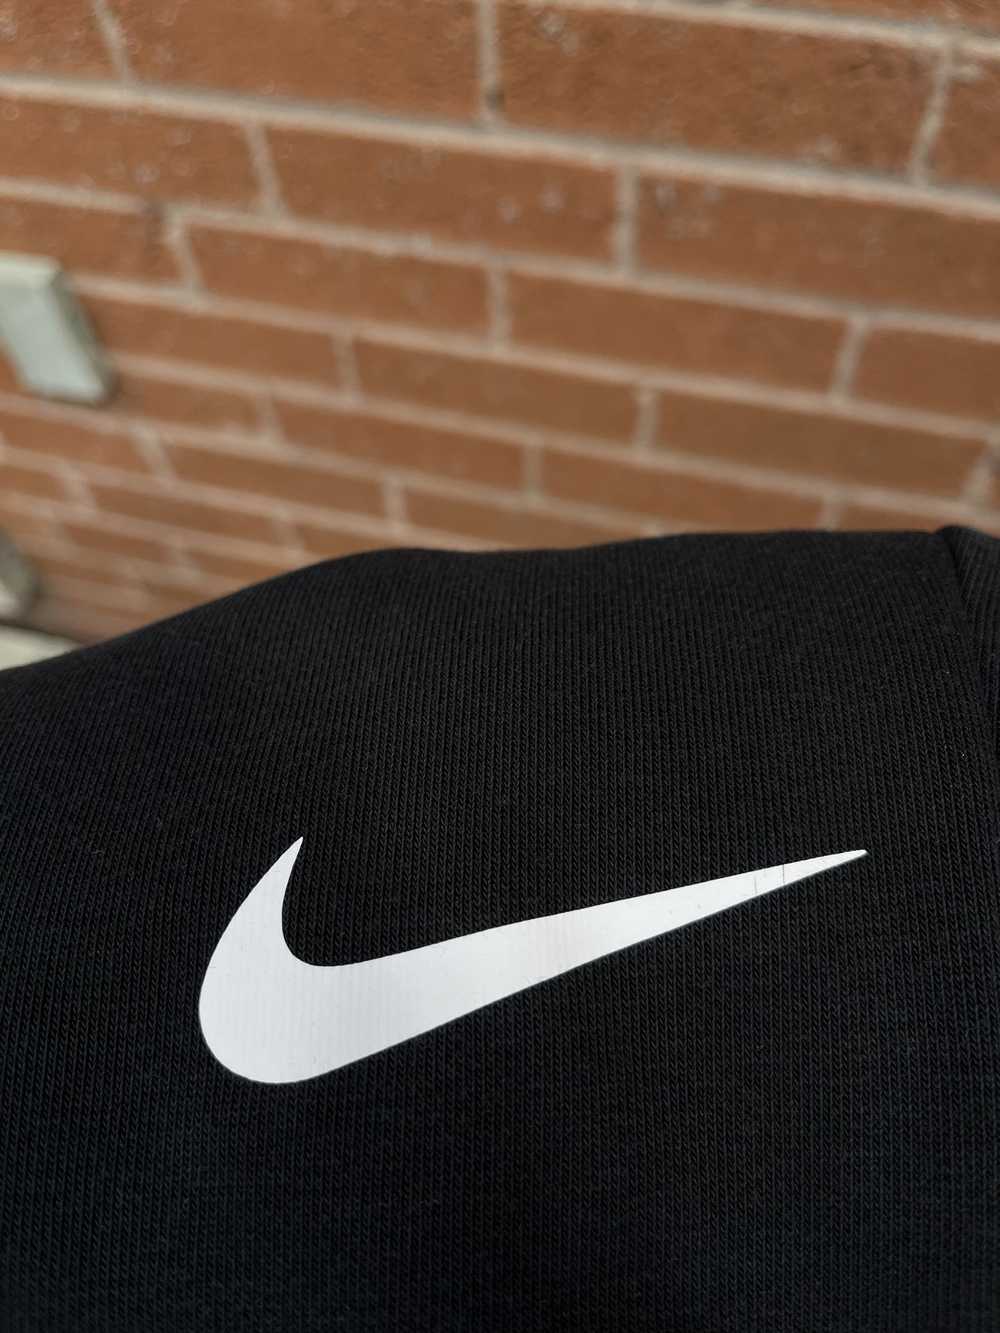 Nike Men's Dri-FIT Taper Fitness Fleece Trousers - image 11